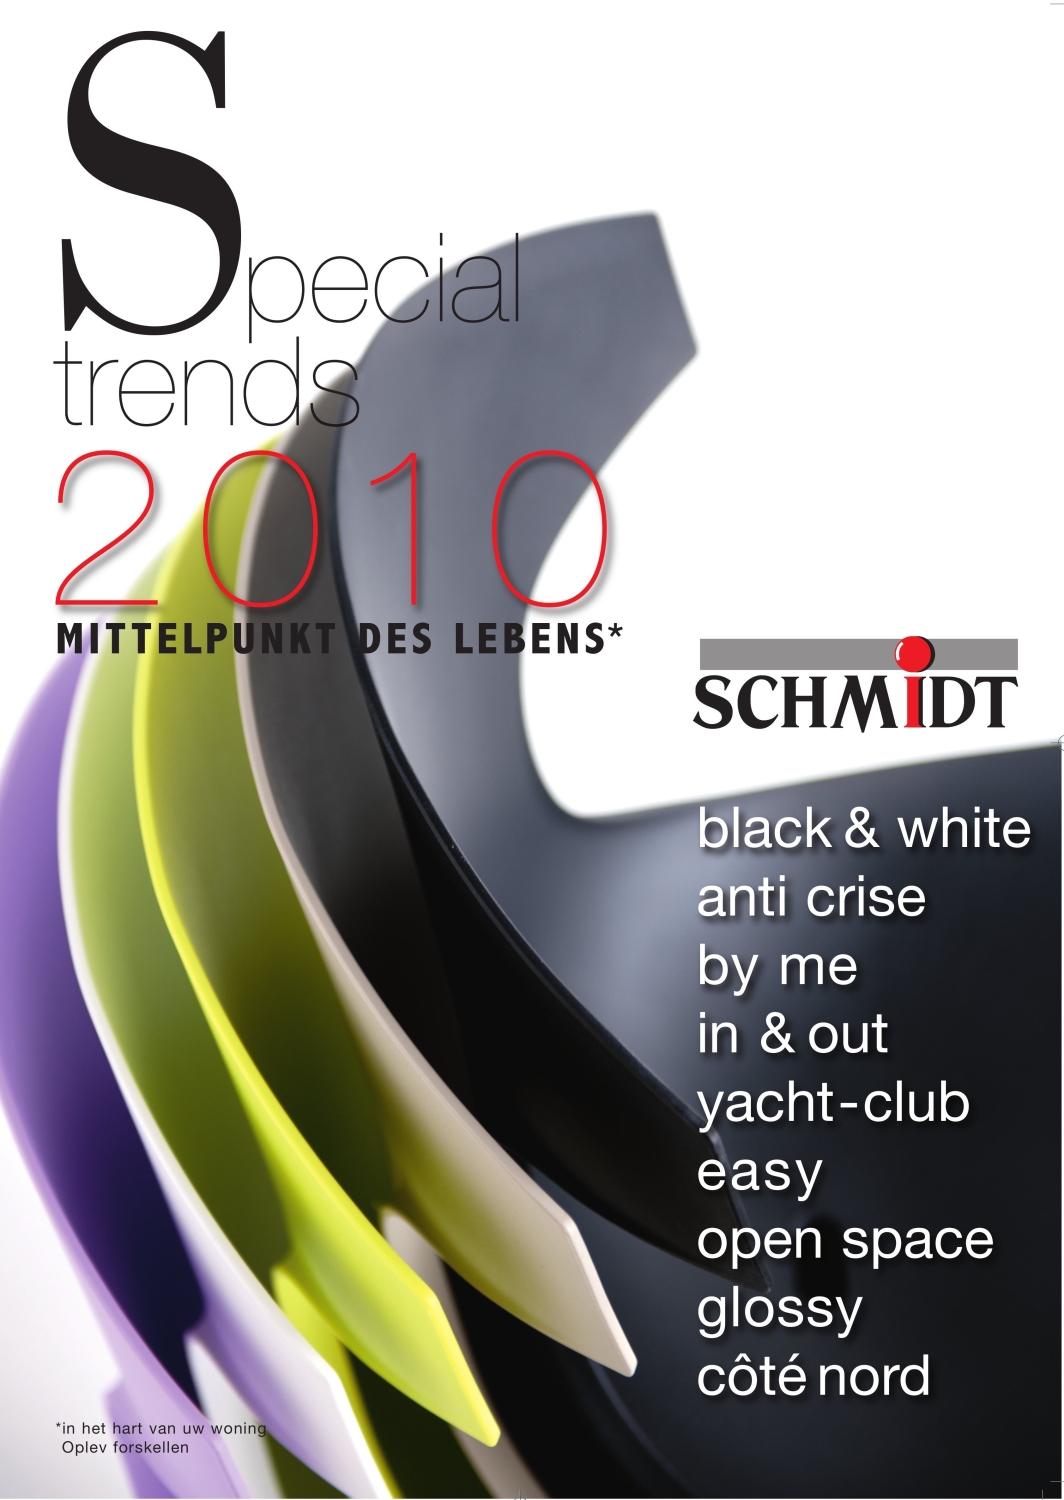 Deutsche-Politik-News.de | Die neue Broschre von Schmidt Kchen zeigt  die aktuellen Trends.